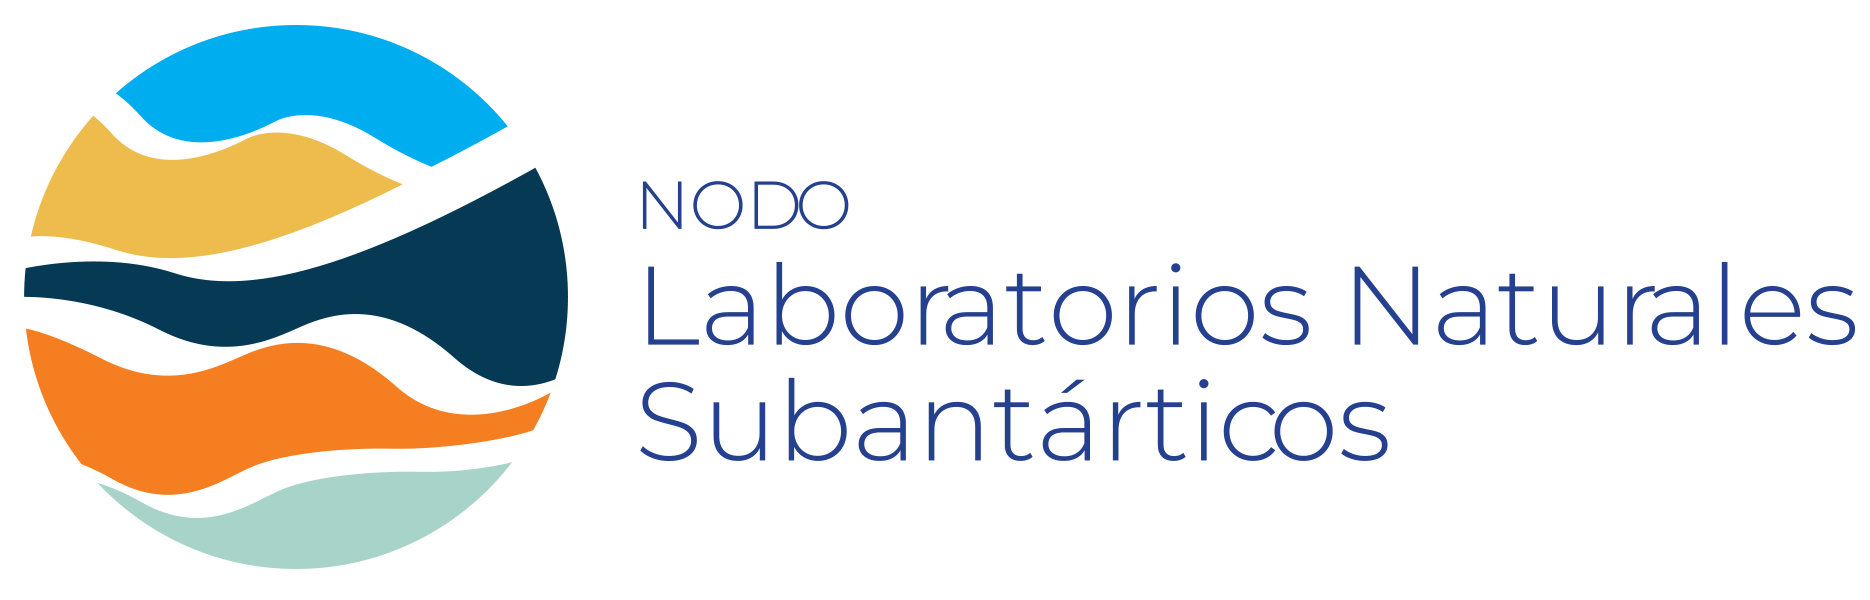 Nodo Laboratorios Naturales Subantárticos